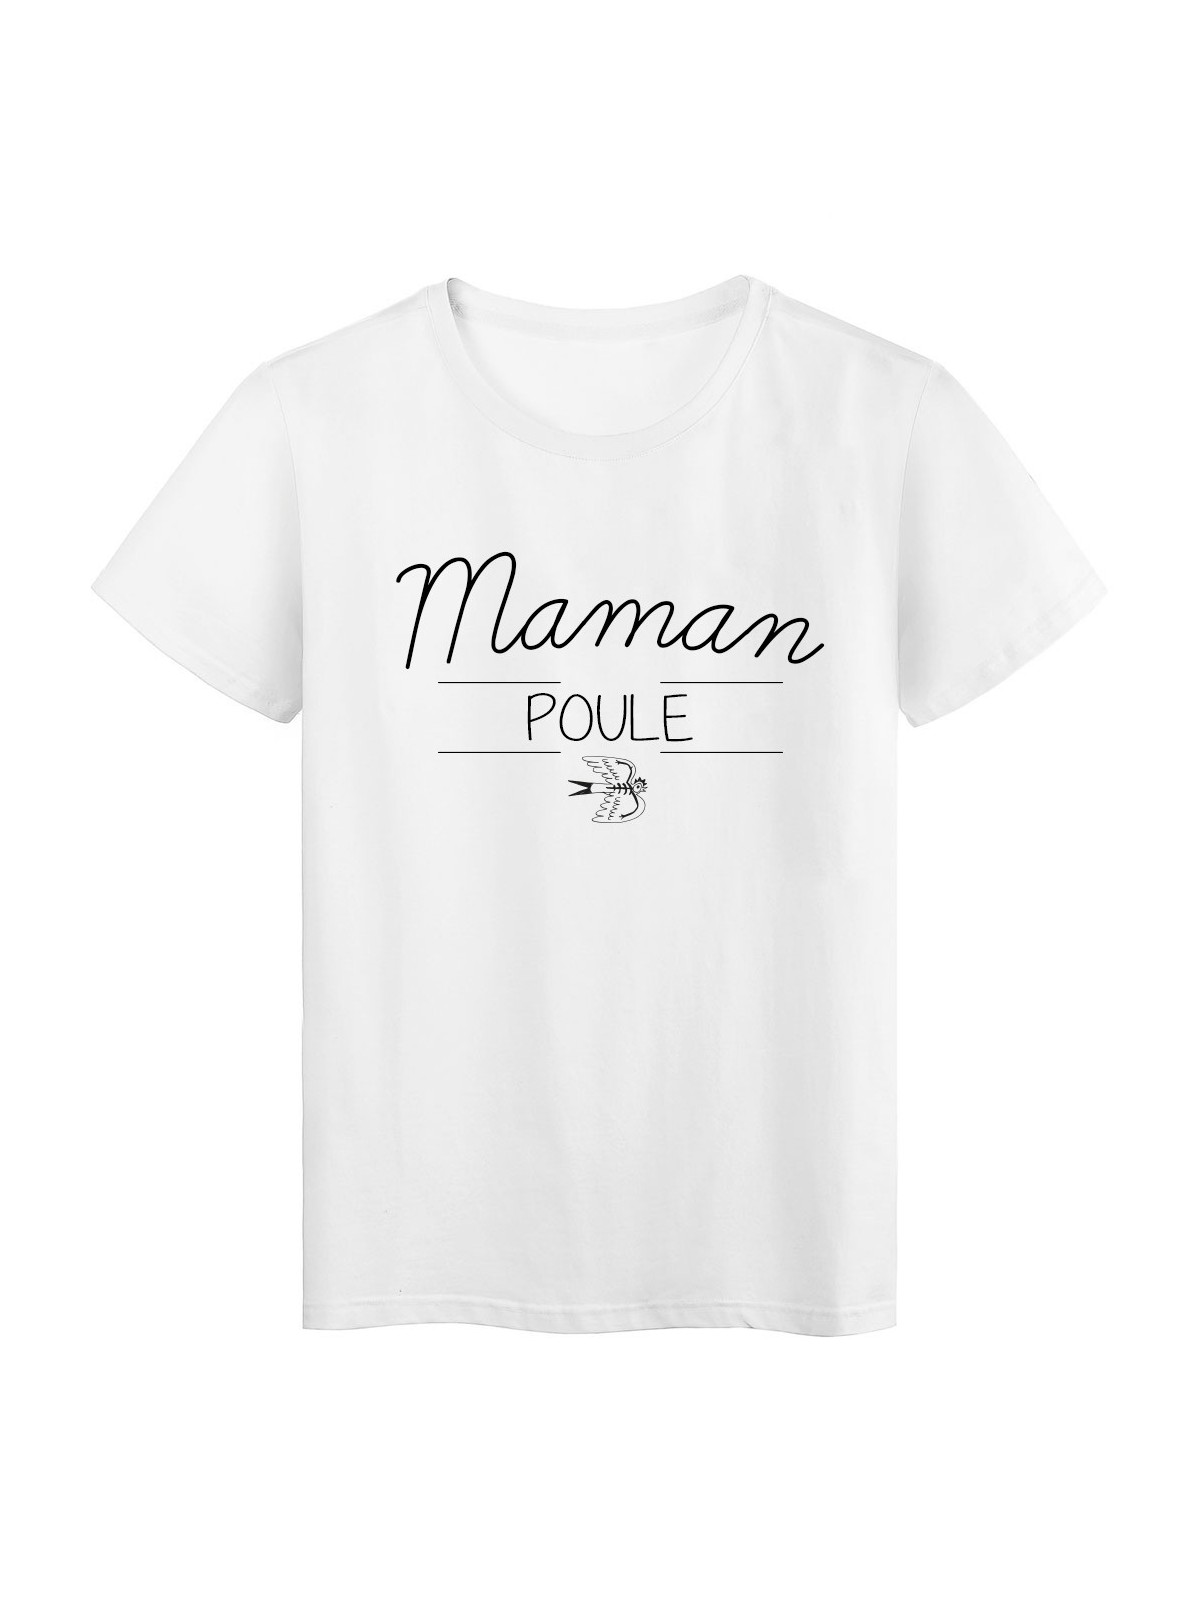 T-Shirt imprimÃ© humour design Maman Poule rÃ©f 2188